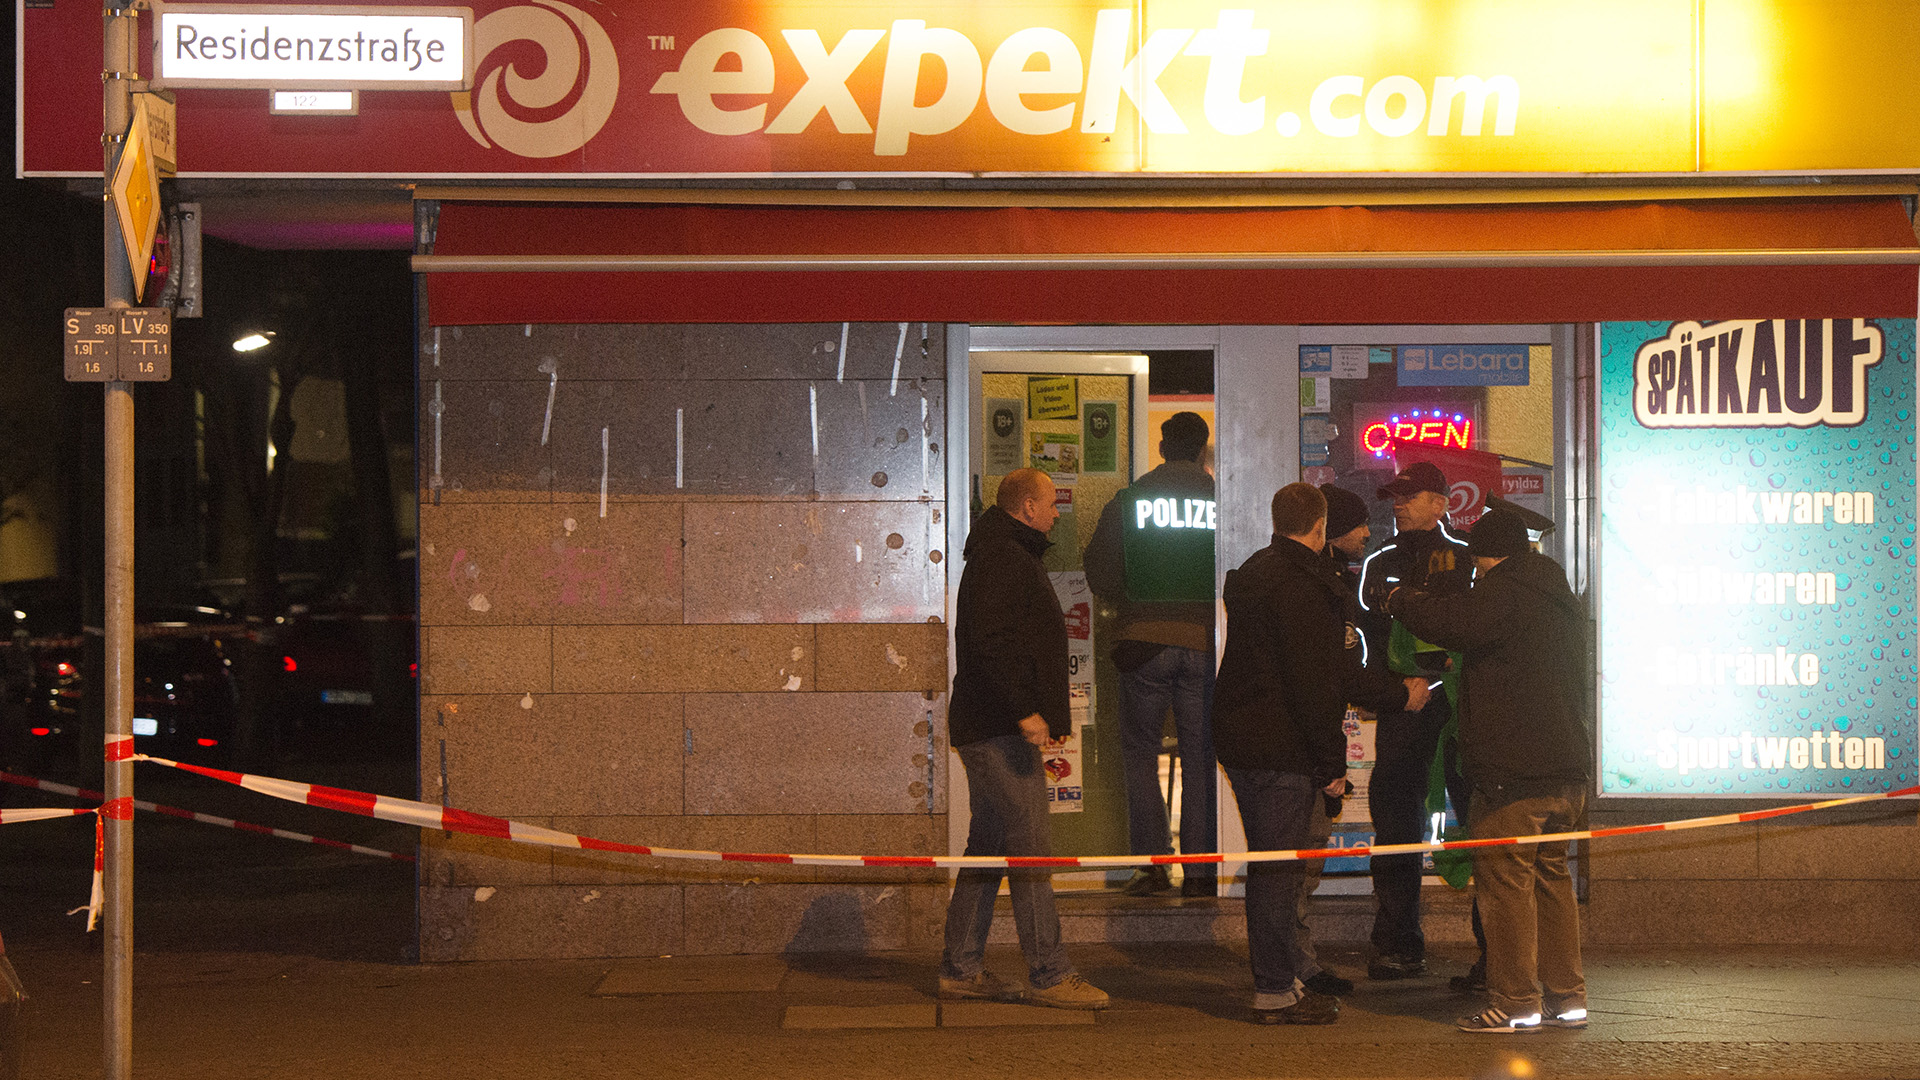 ARCHIV - Polizeibeamte untersuchen am 11.01.2014 in Berlin den Tatort nach einer Schießerei. (Quelle: dpa/Maurizio Gambarini)